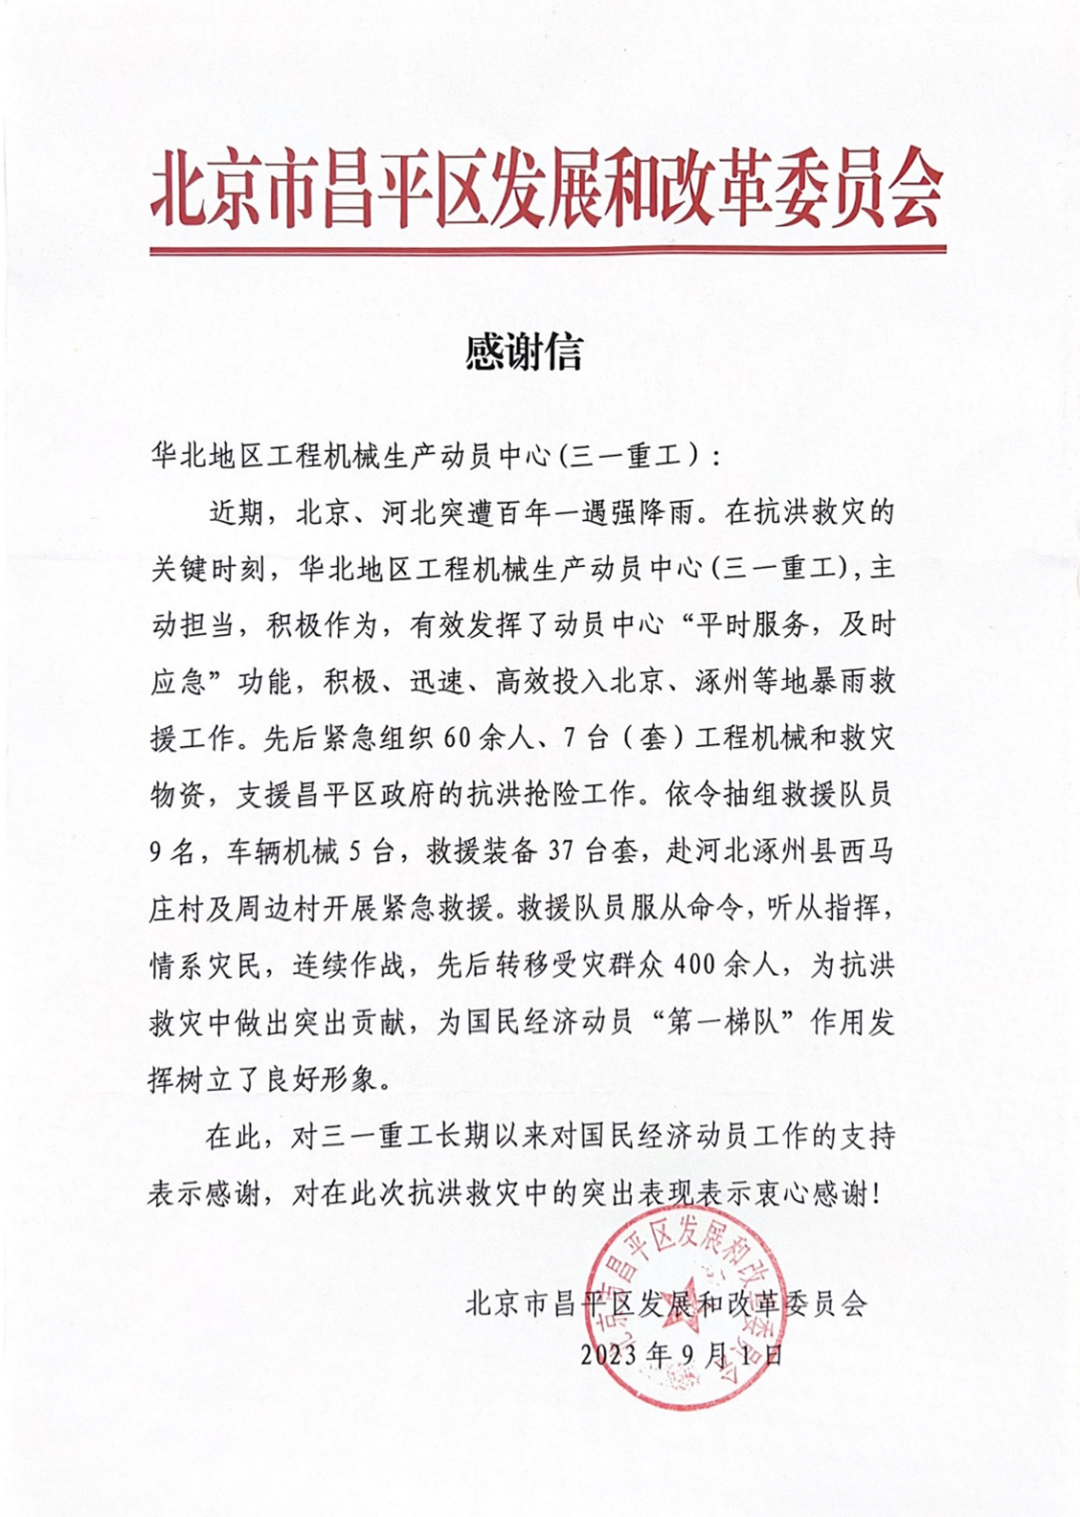 三一重工收到一封来自北京市昌平区发展和改革委员会发来的感谢信